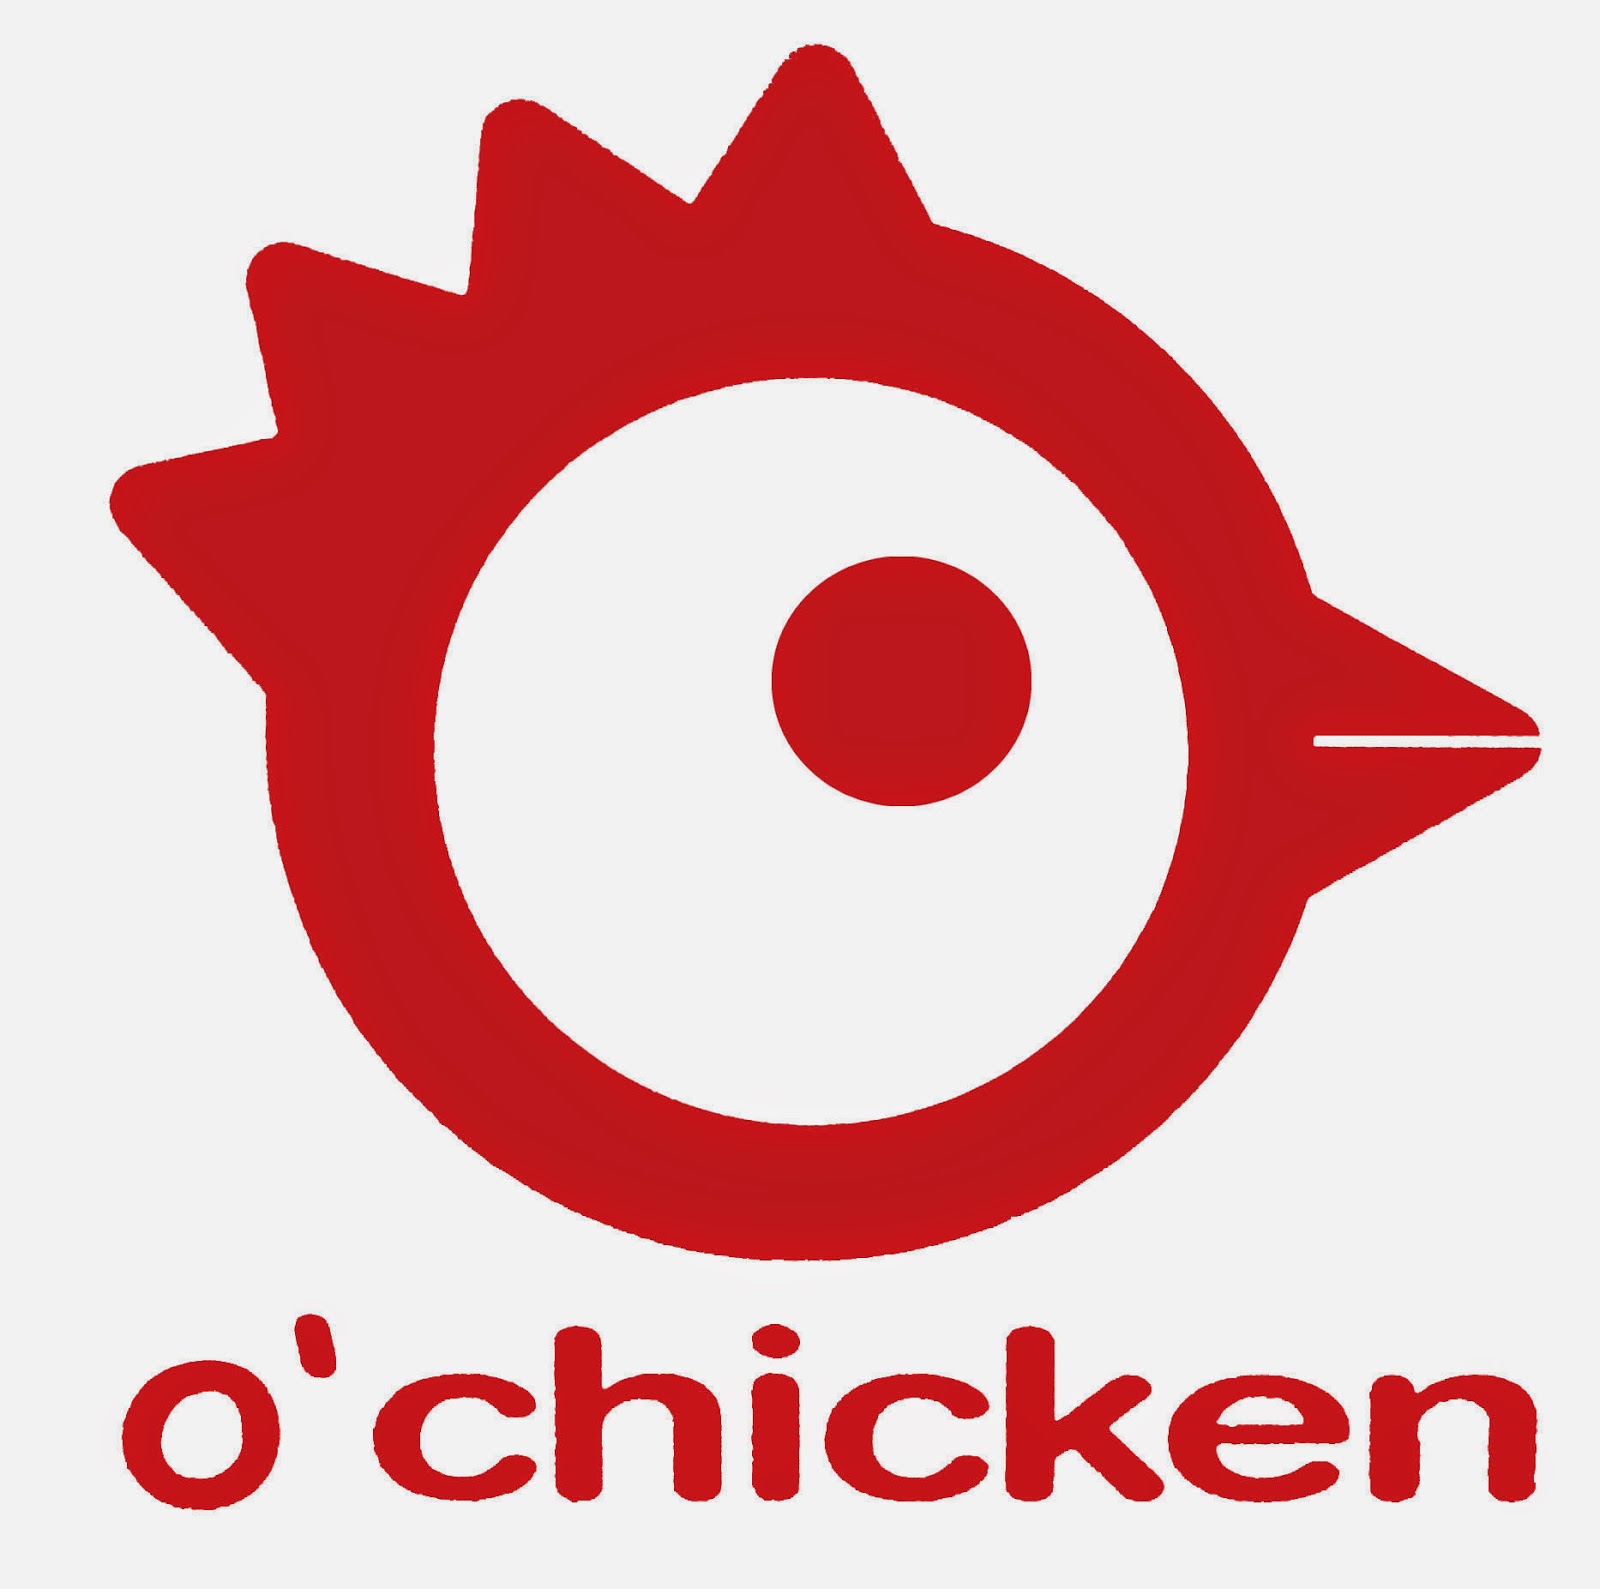 OChicken FranchiseGlobal com